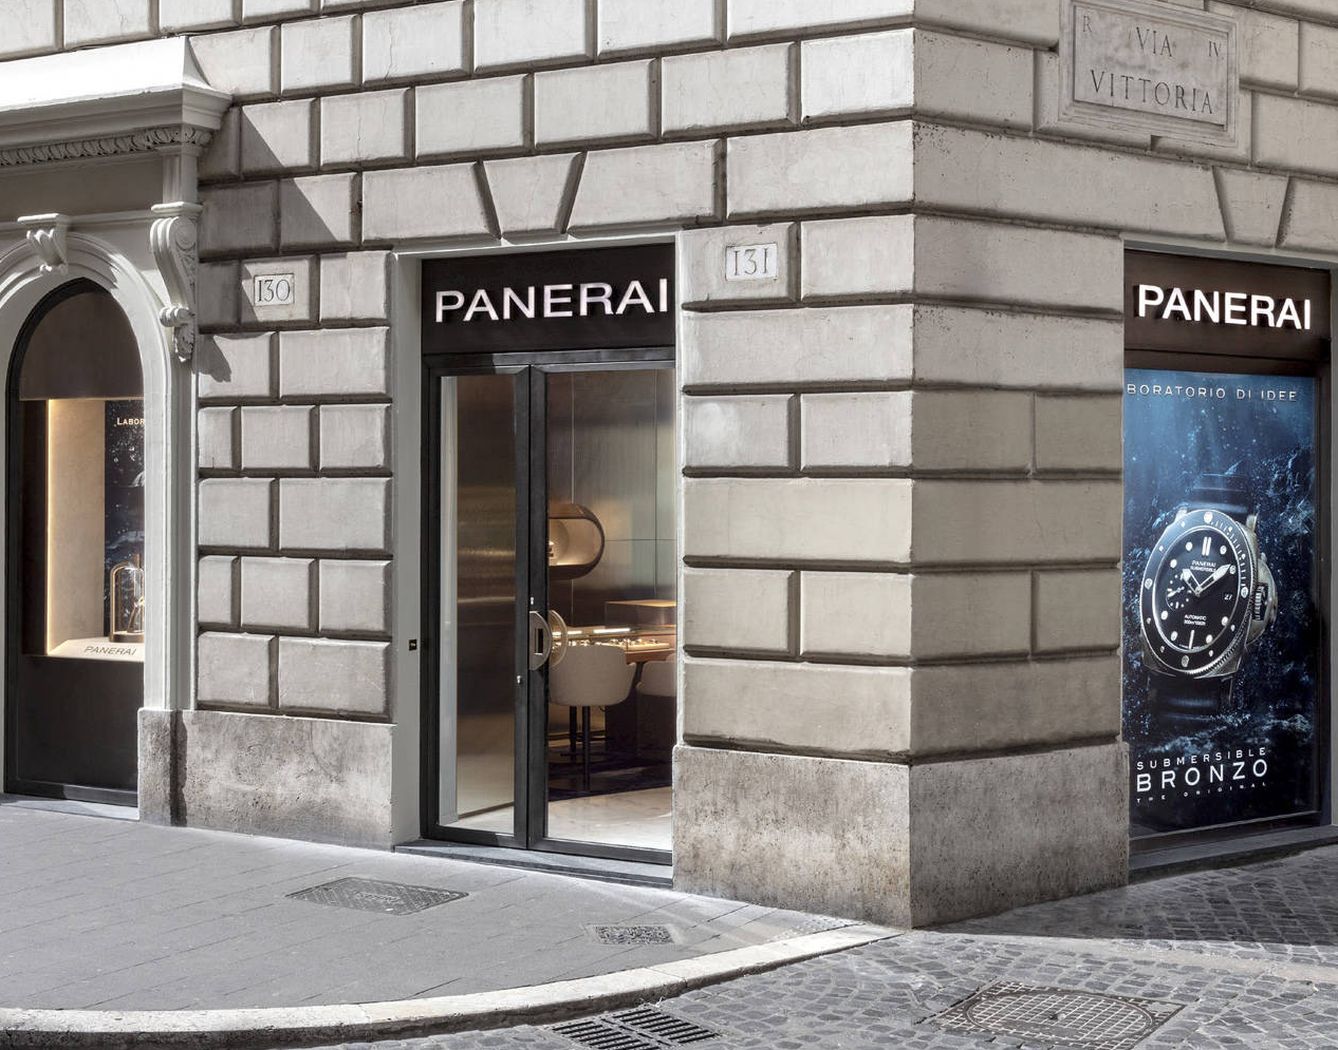 La fachada de la boutique Panerai dispone de nada menos que cuatro escaparates.